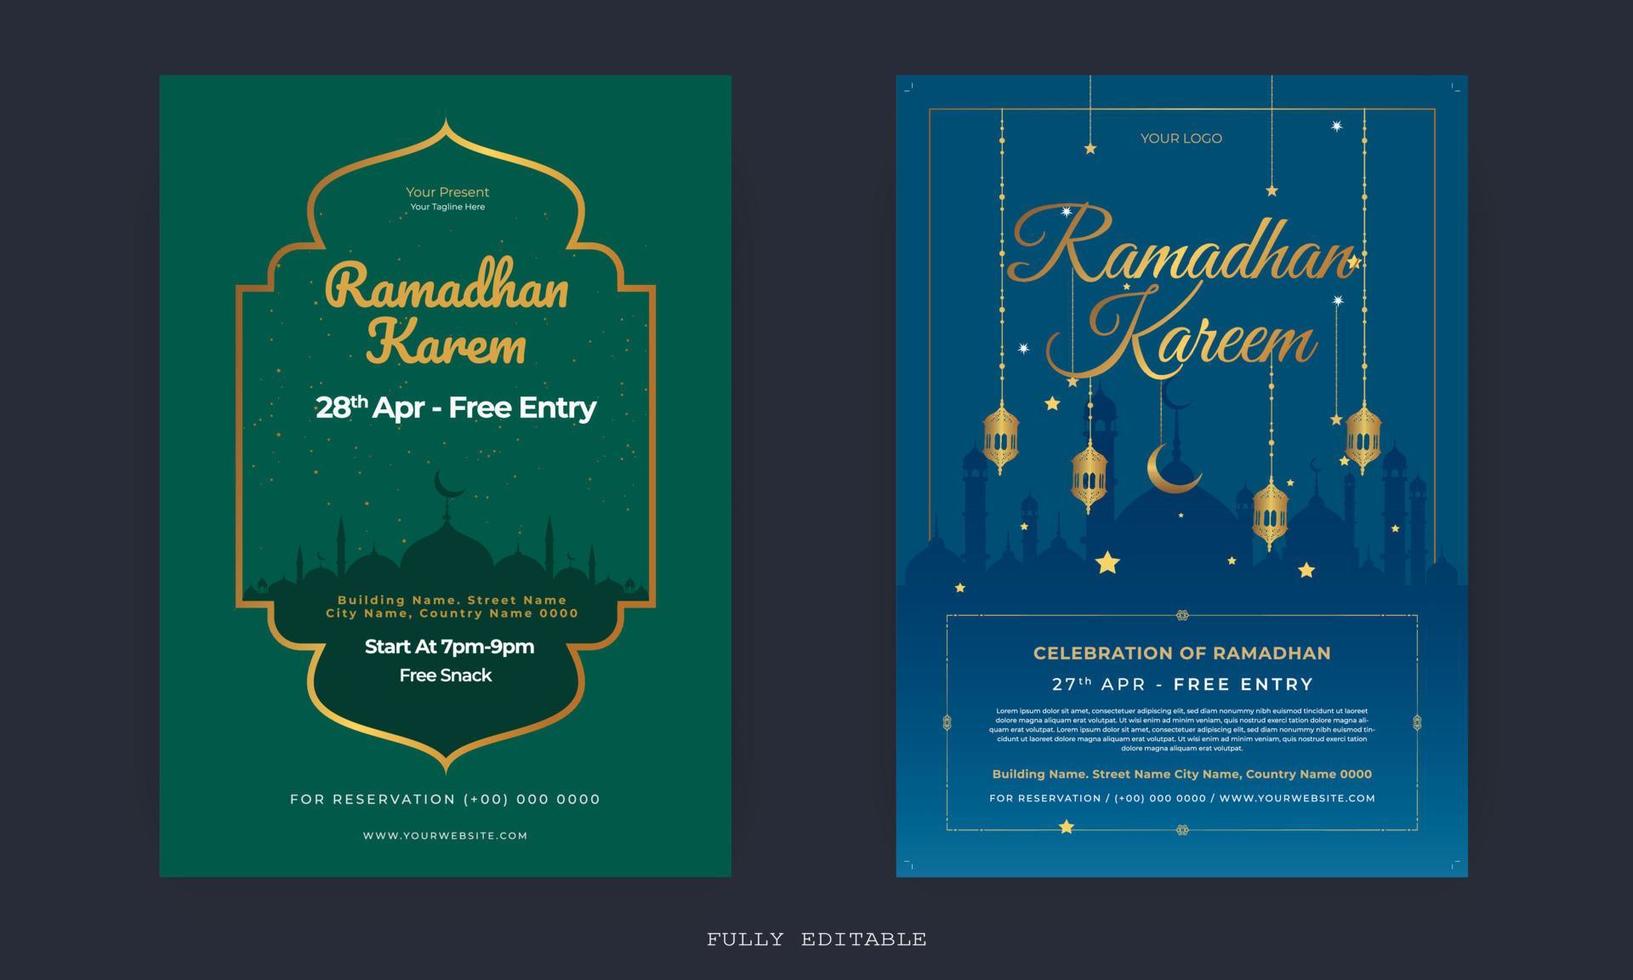 Ramadan Mubarak-Flyer. ramadan kareem satz plakate oder einladungsdesign. dekorative Retro-Grußkarte oder Einladungslayout-Design vektor